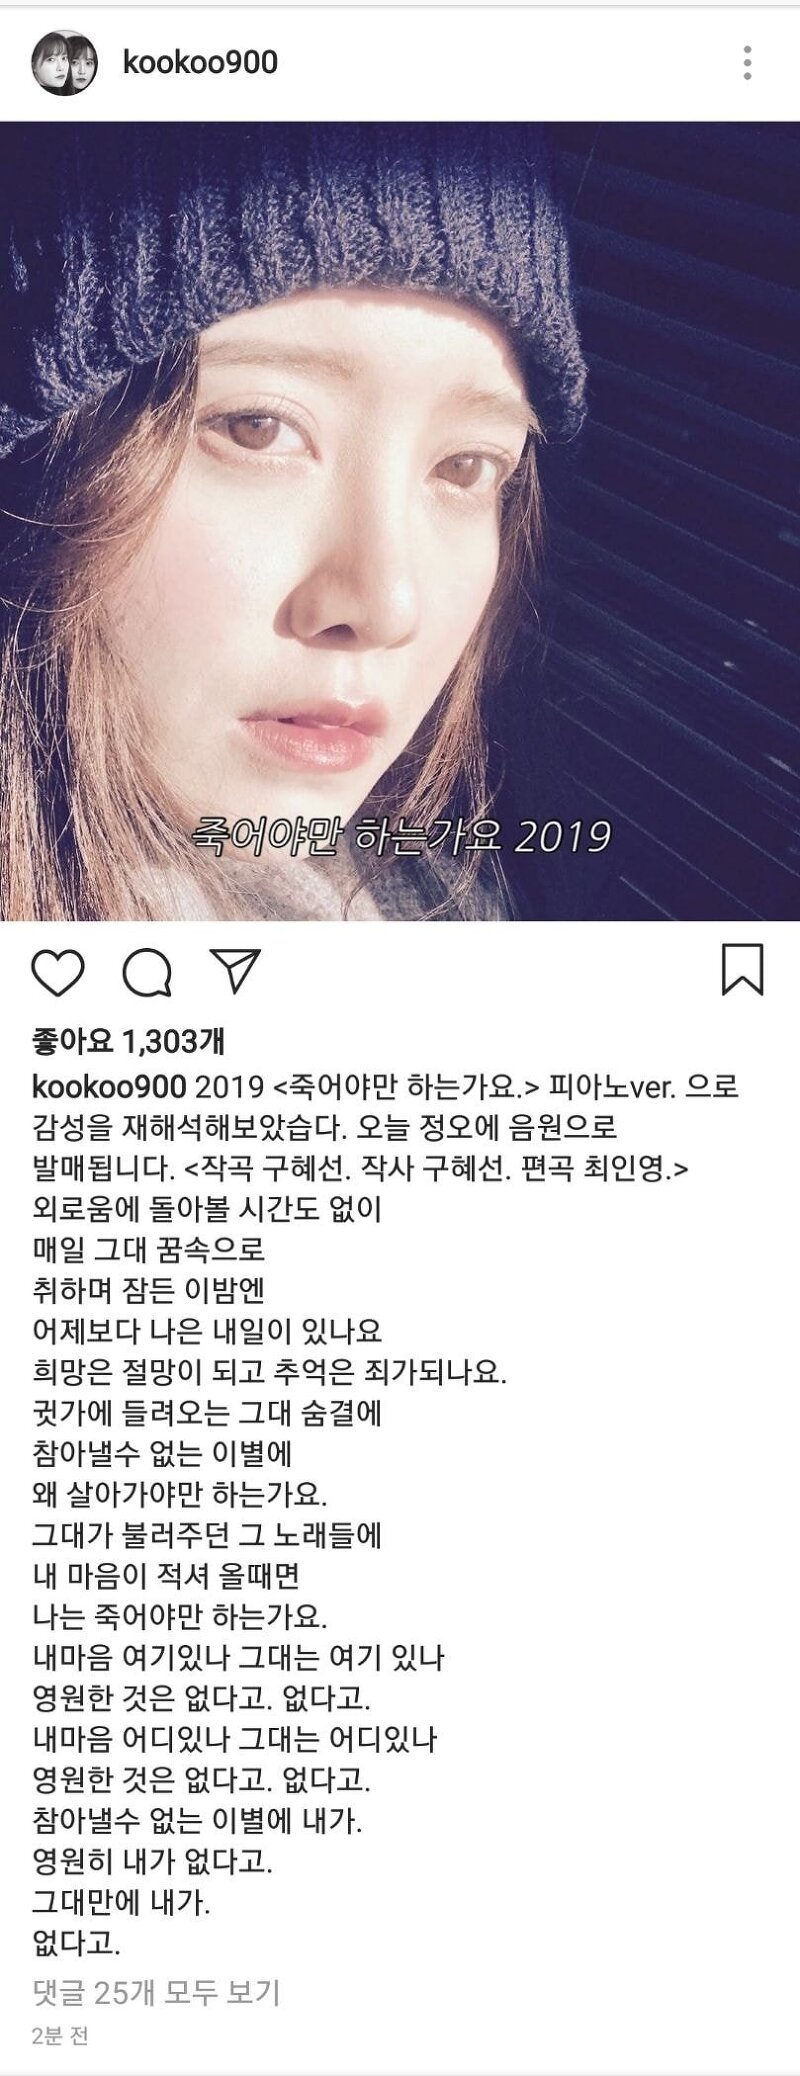 구혜선 인스타그램 업뎃 죽어야만 하는가요 2019